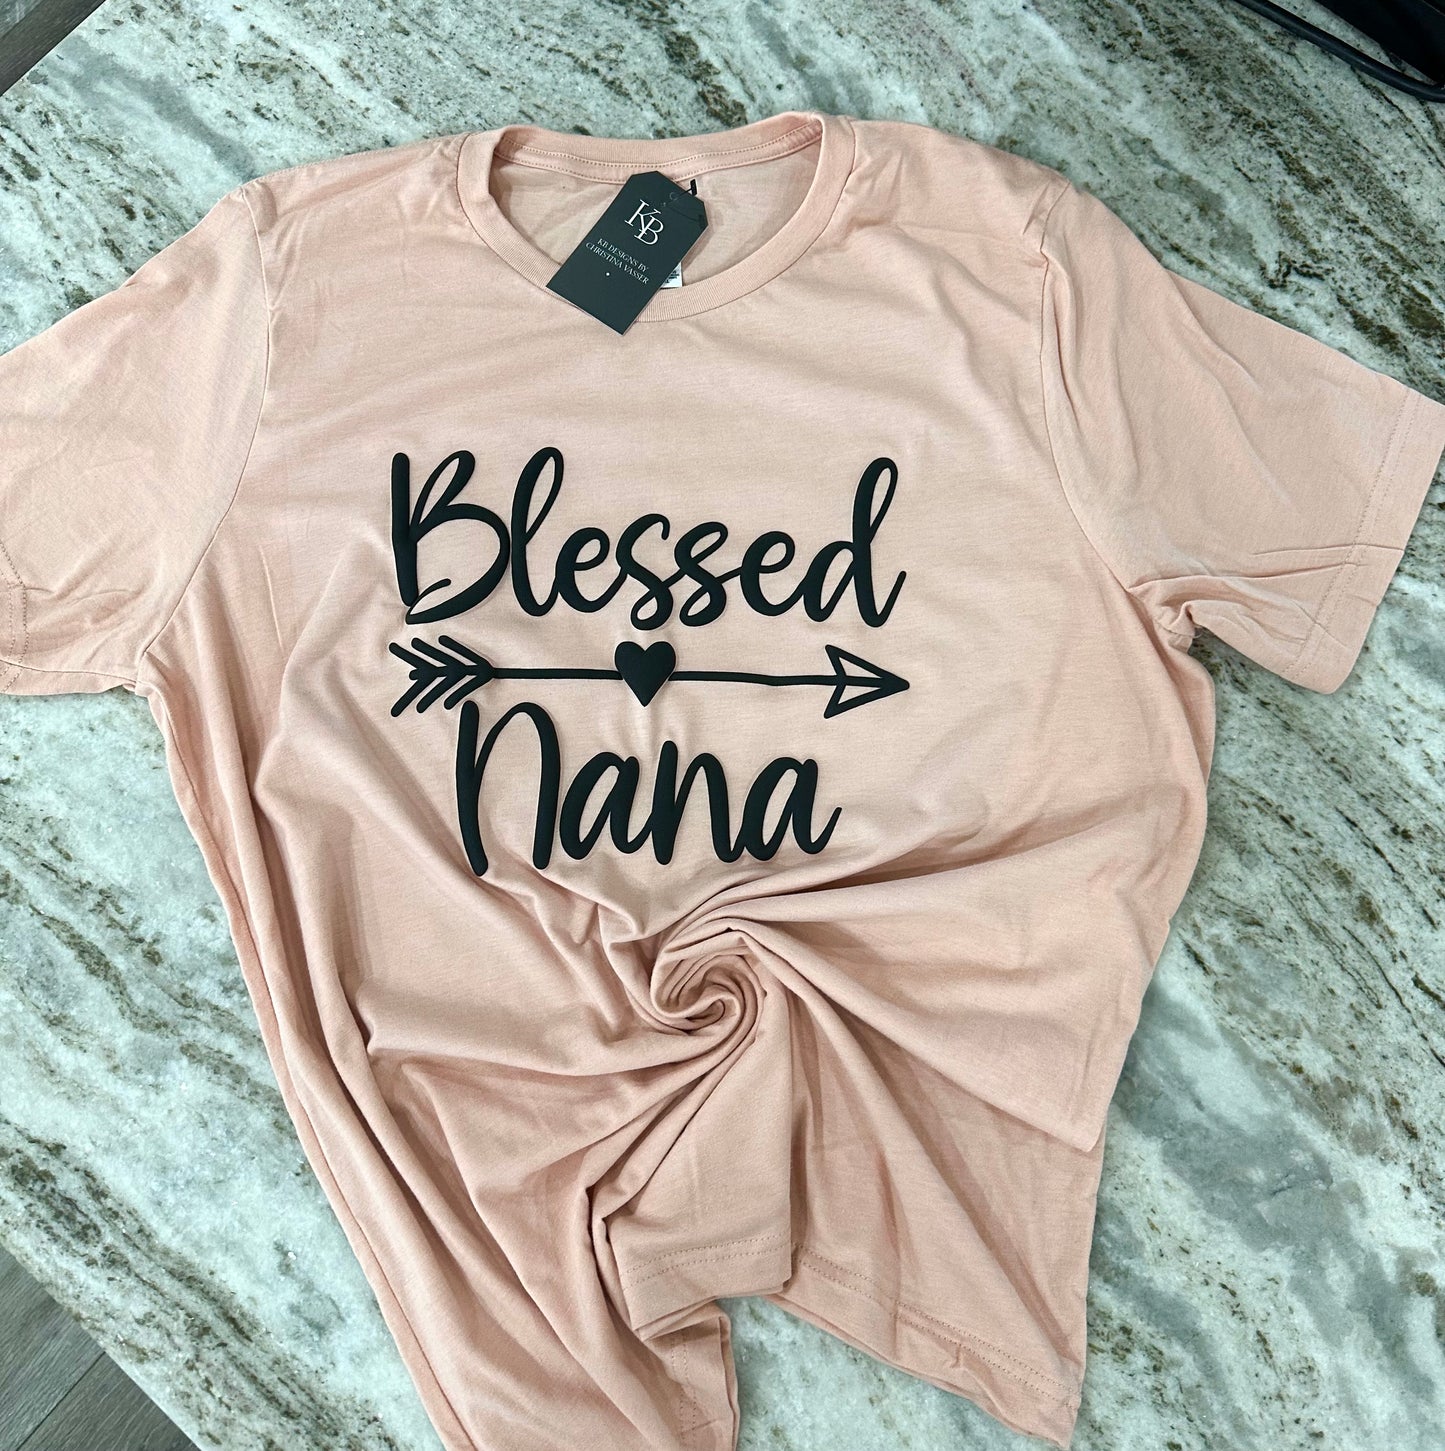 Blessed NaNa